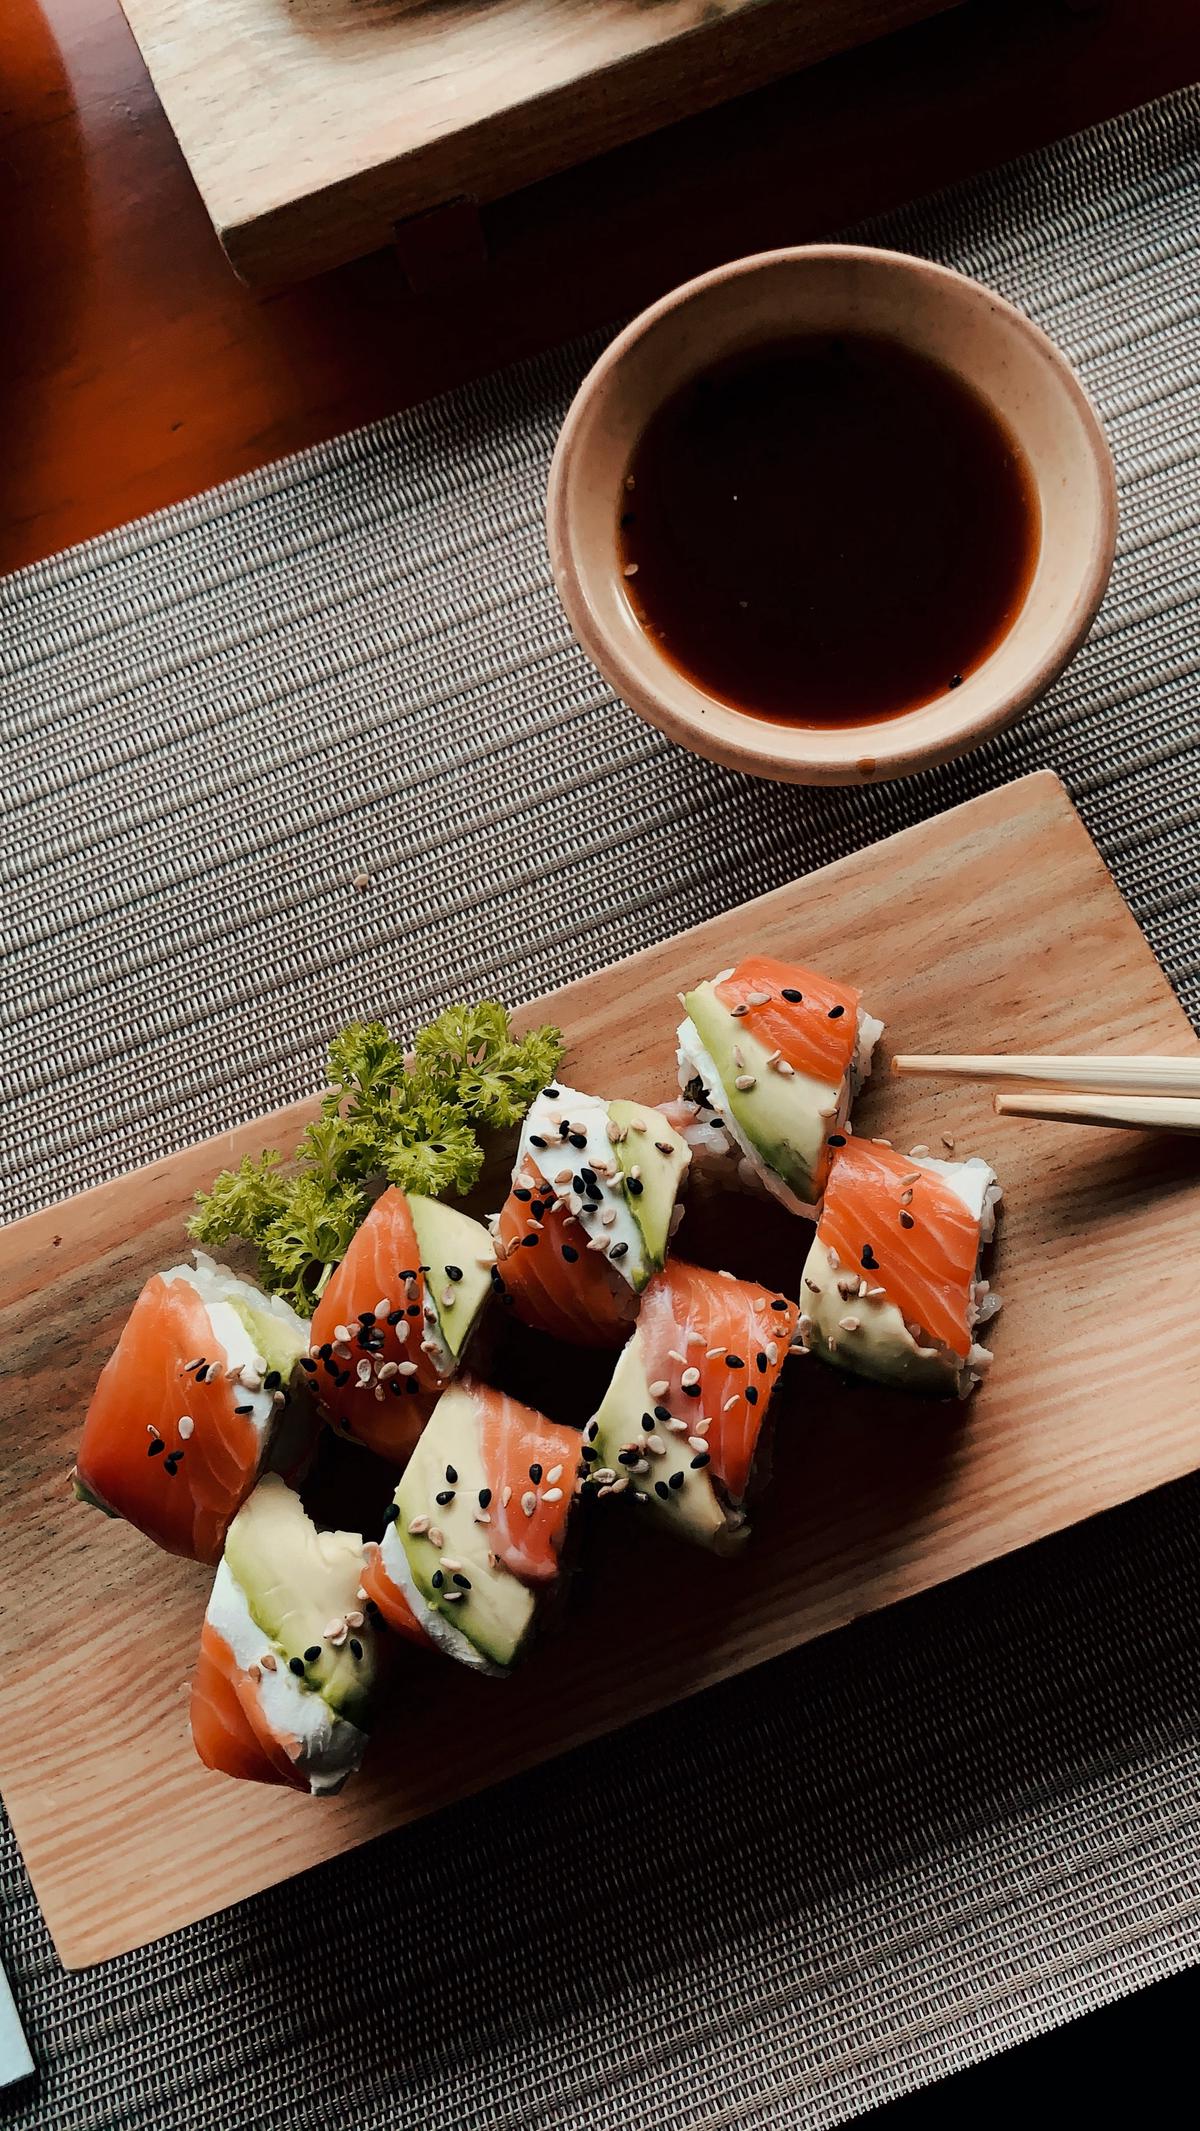 Ein stilvolles Sushi-Arrangement auf einem weißen Teller mit Bambusstäbchen umgeben